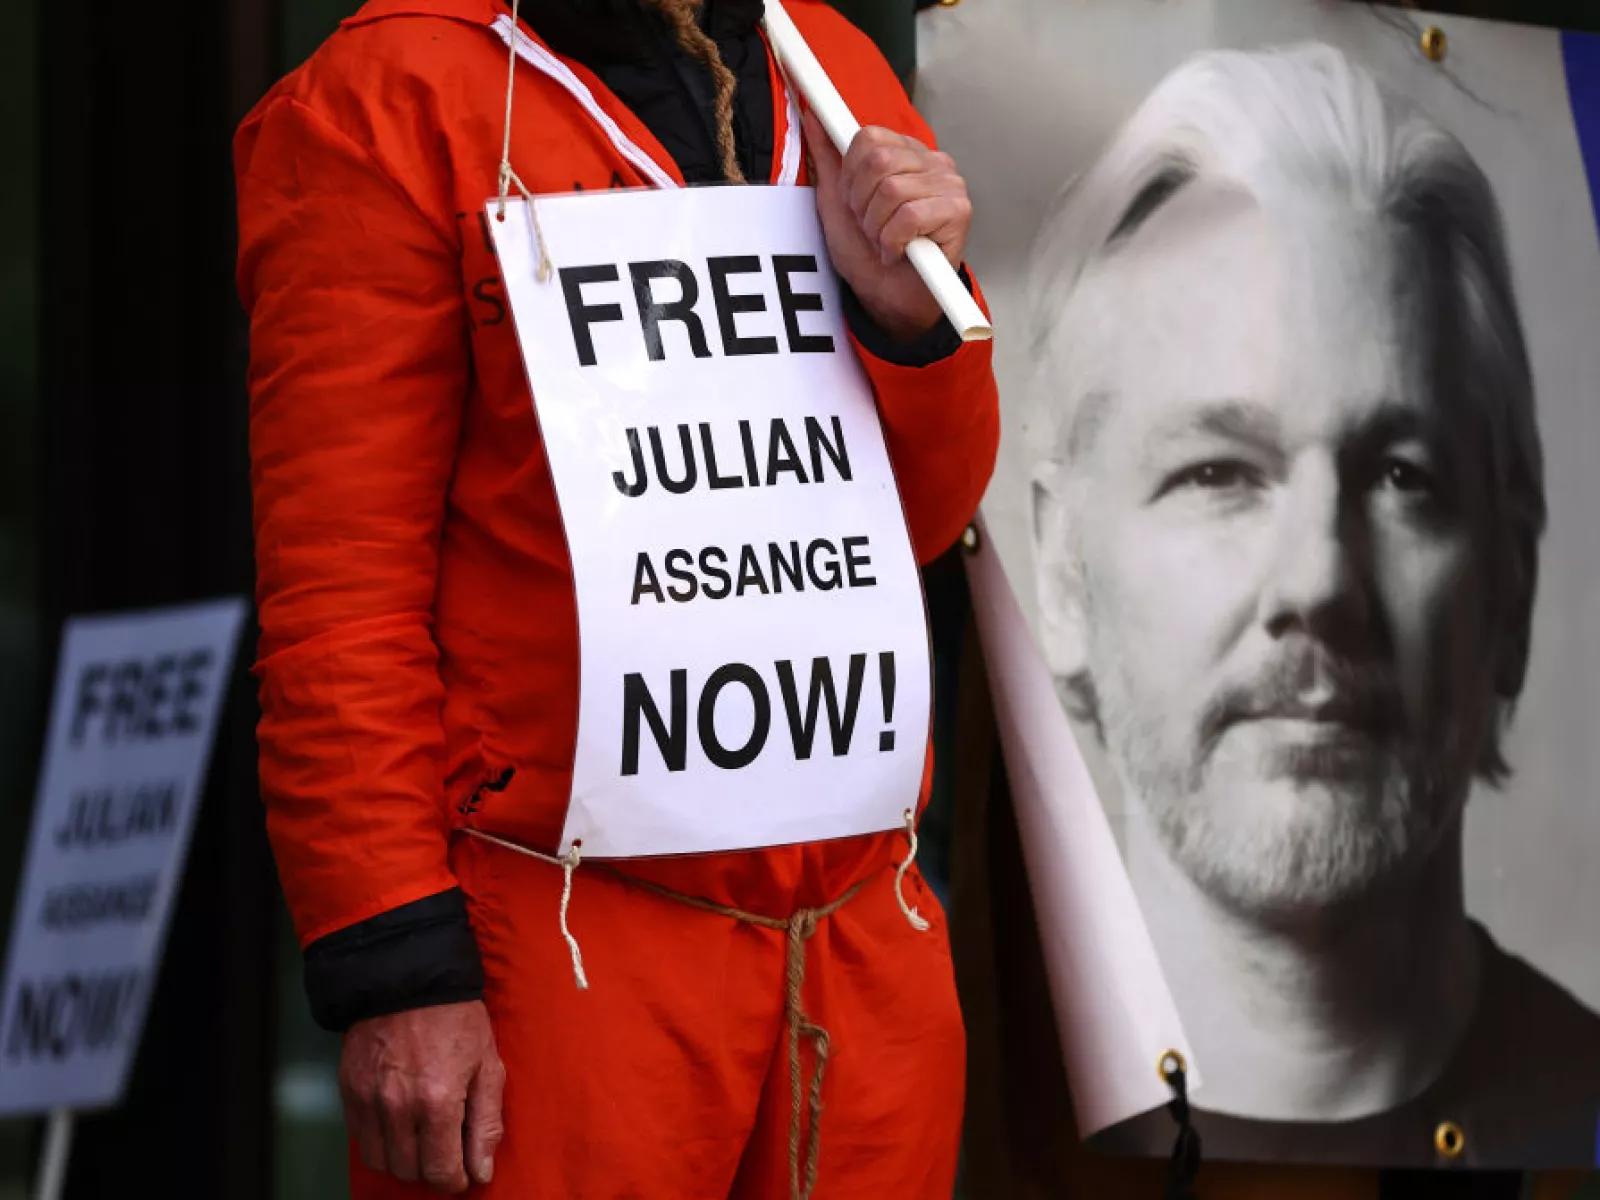 WikiLeaks founder Julian Assange strikes plea deal with the U.S.